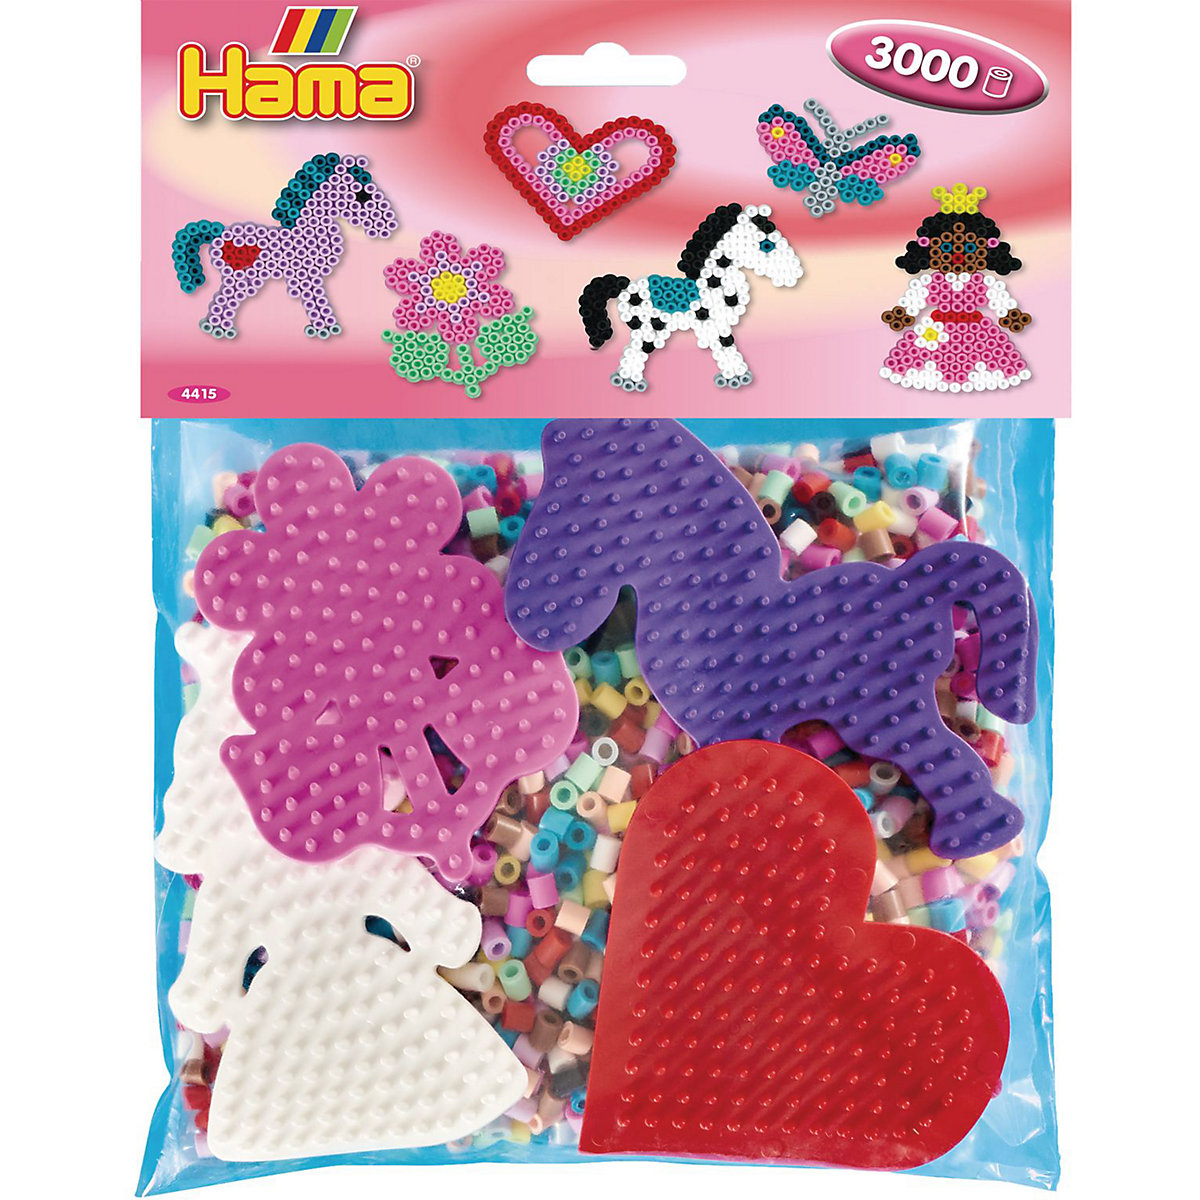 Hama Perlen HAMA 4415 Gruppenpackung mit 3.000 midi-Perlen & 4 farbigen Stiftplatten (Mädchen)